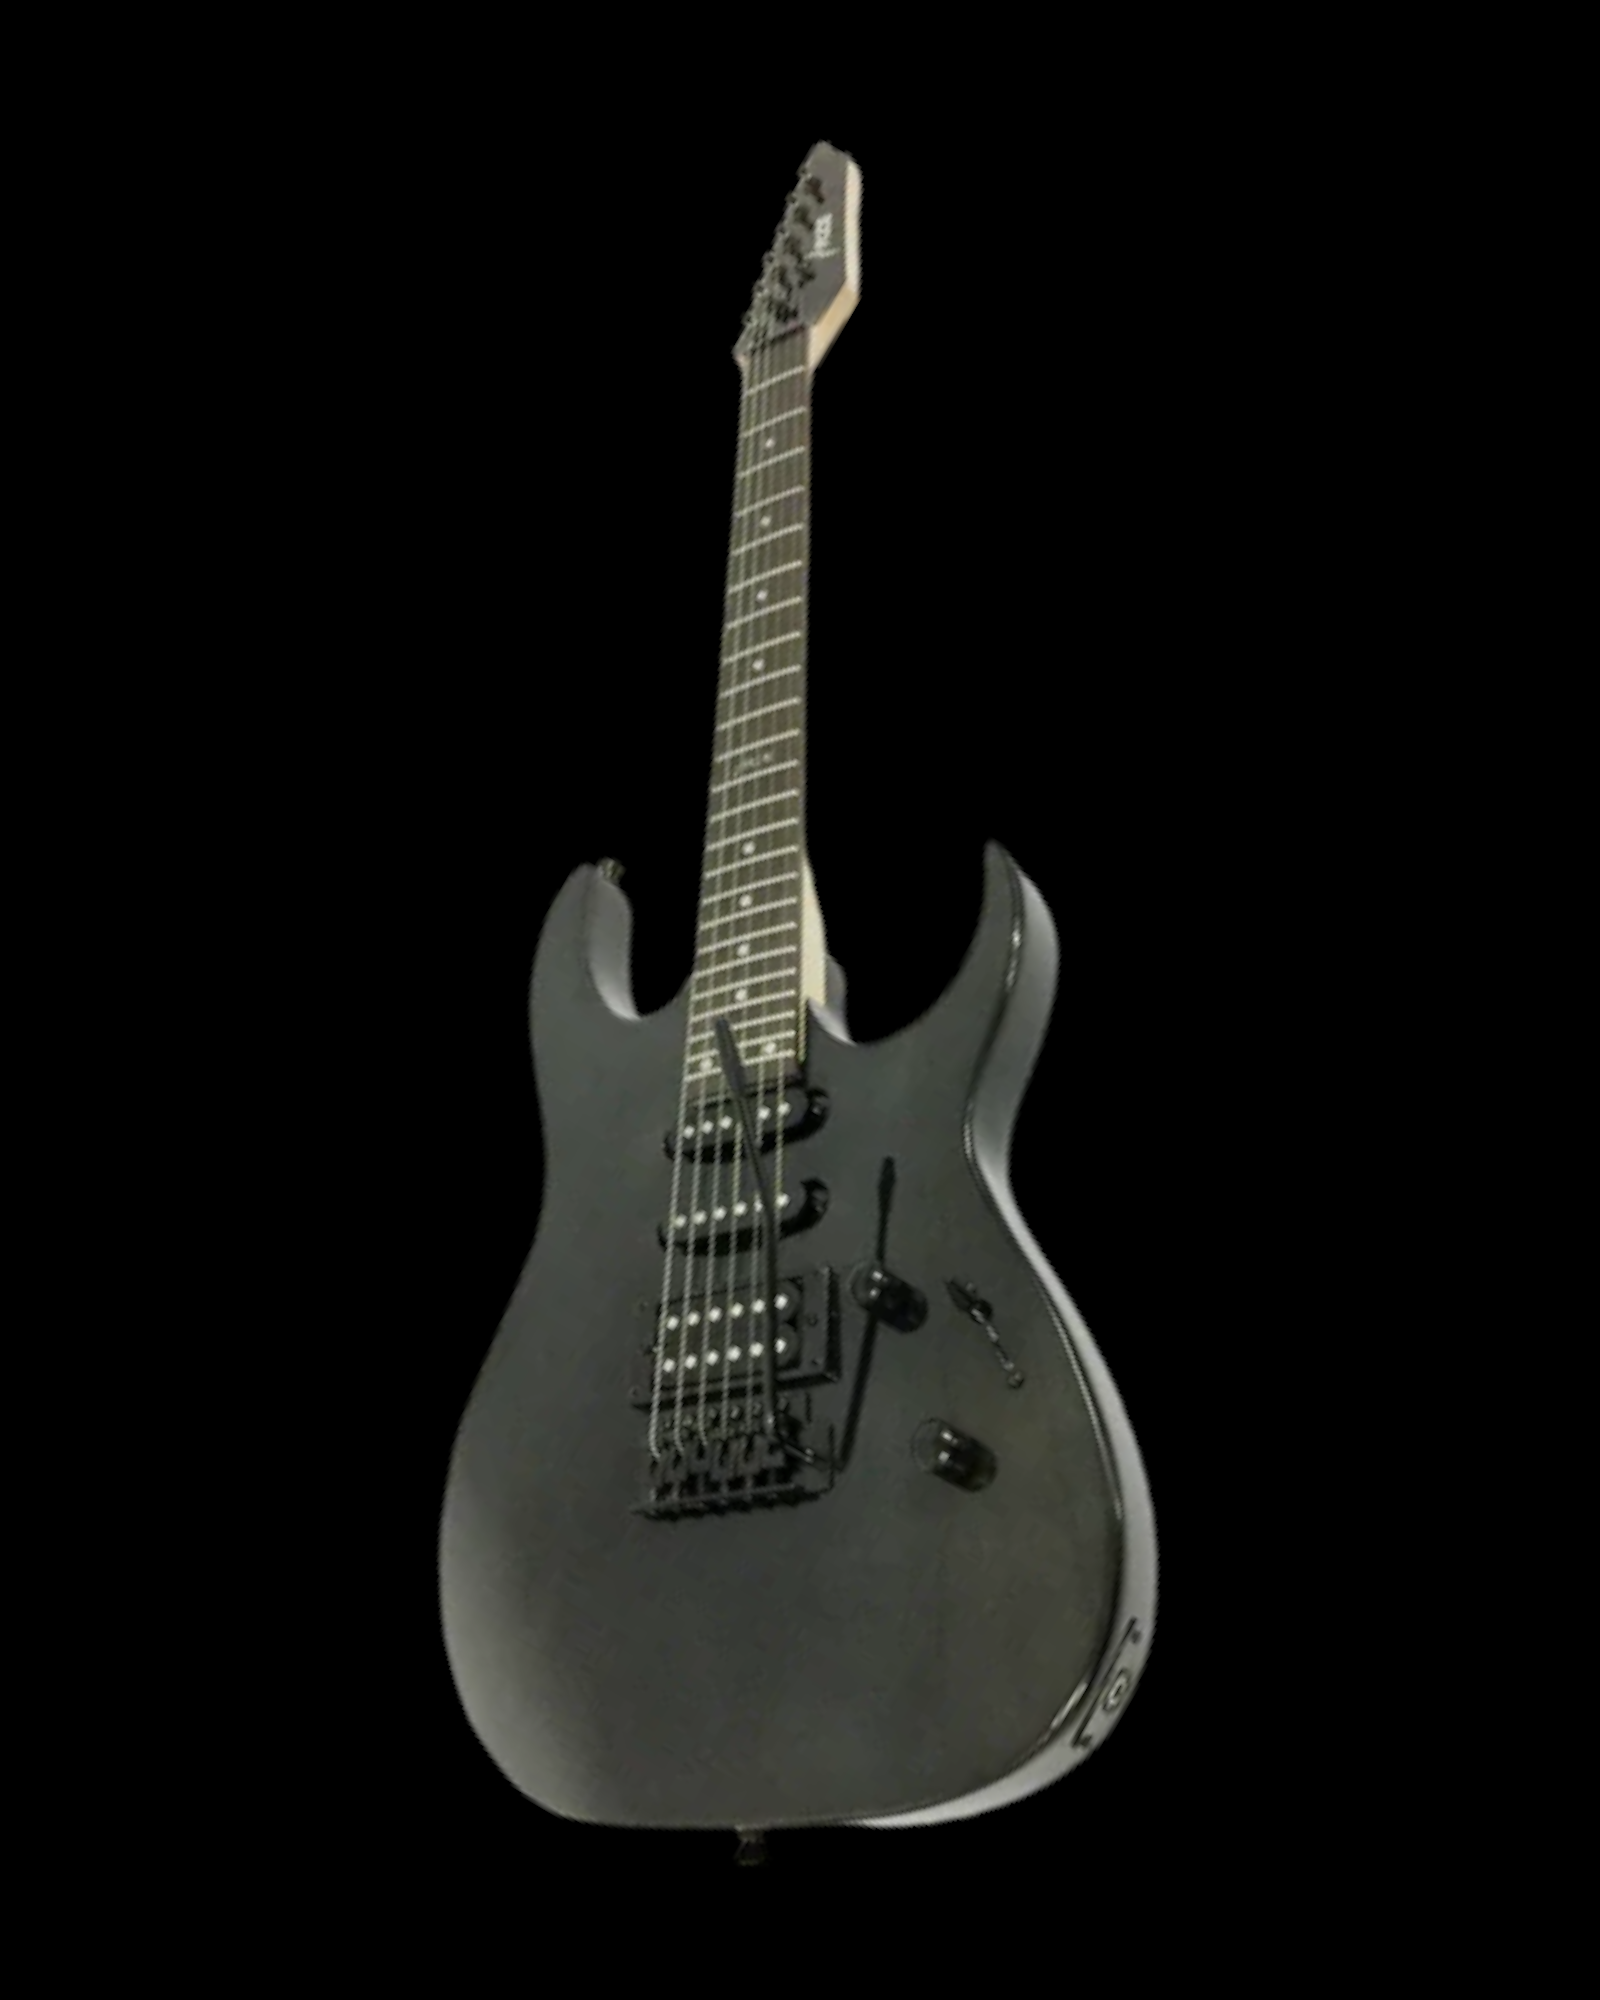 Haze Maple Neck HSH Tremolo HRG Electric Guitar - Black SEGLG4DBK